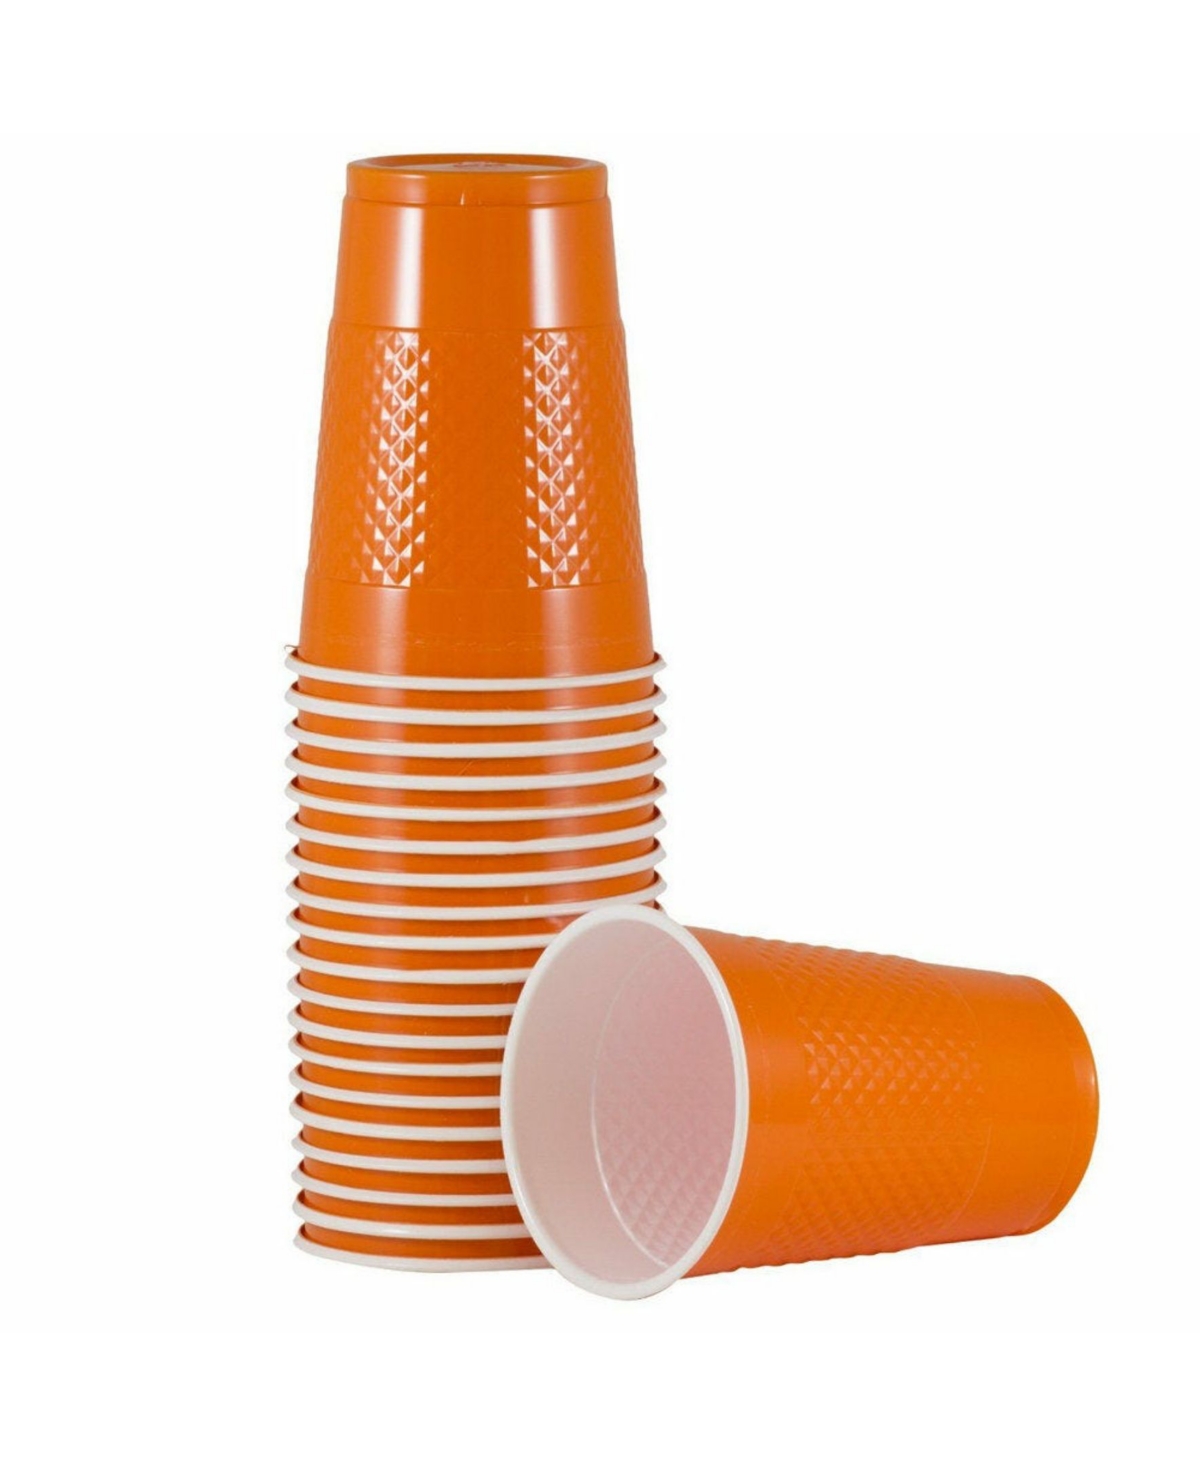 Jam Paper Plastic Party Cups In Orange